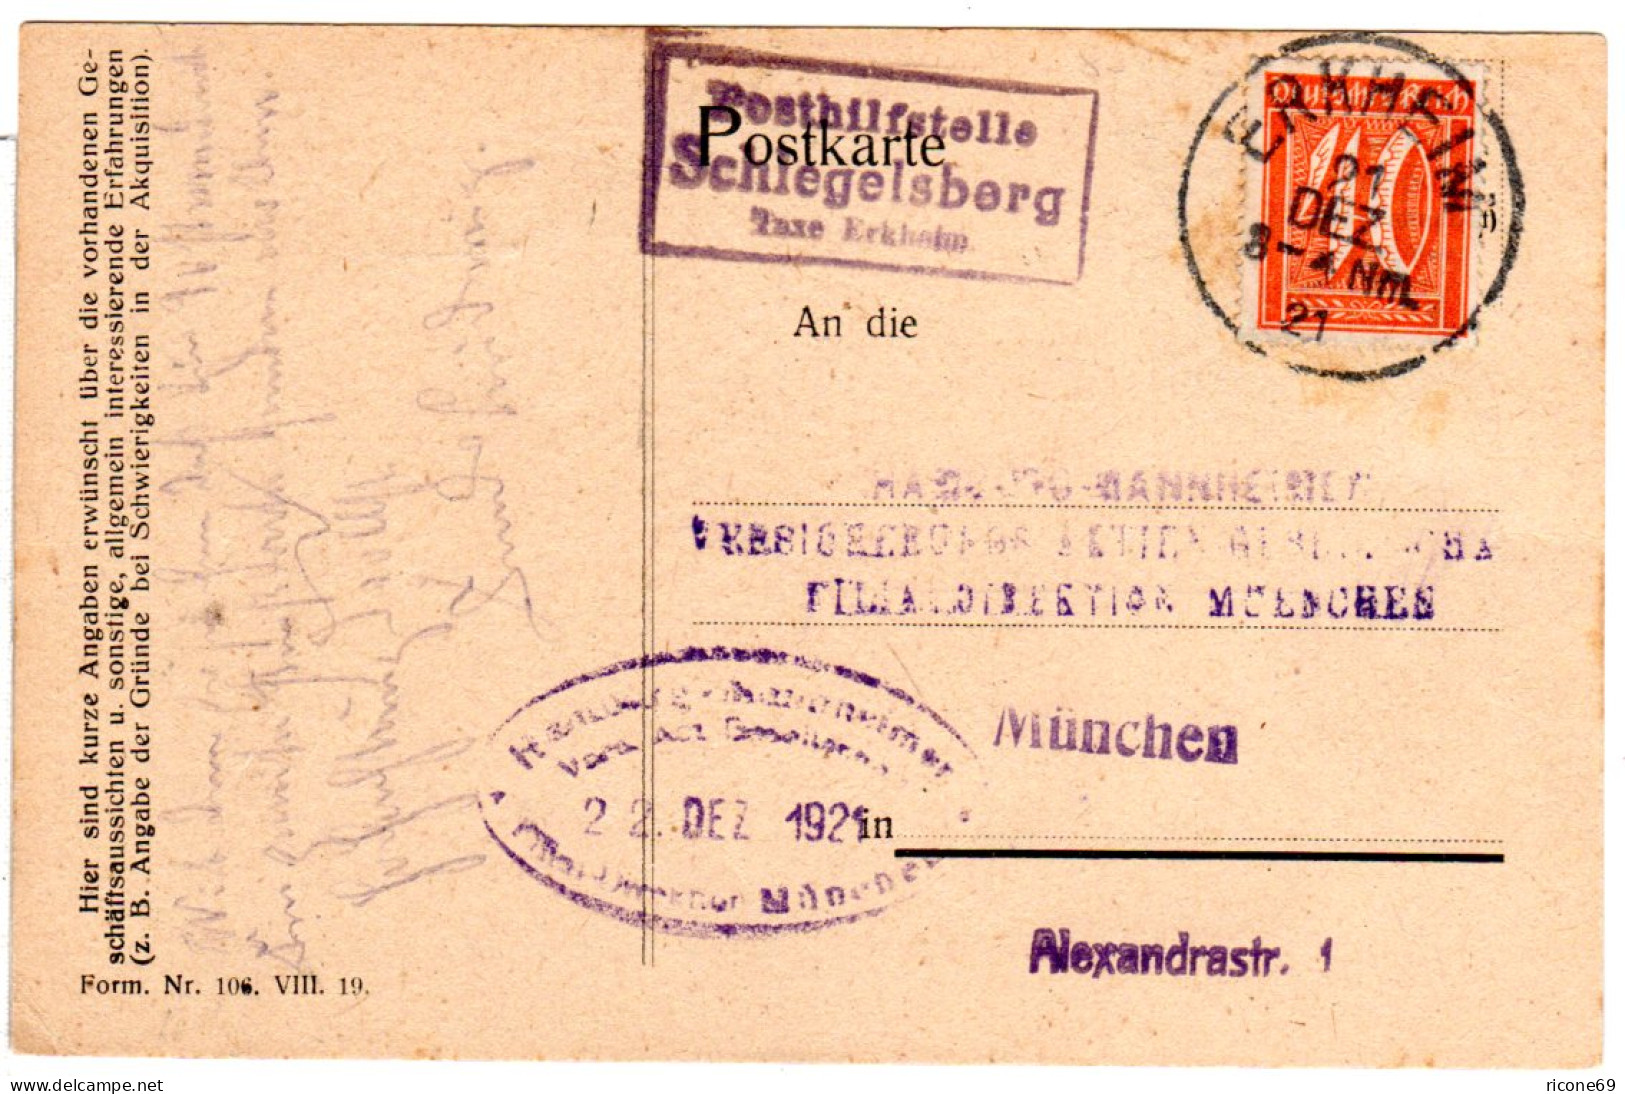 DR 1921, Bayern Posthilfstelle SCHLEGELSBERG Taxe Erkheim Auf Karte M. 40 Pf.  - Briefe U. Dokumente